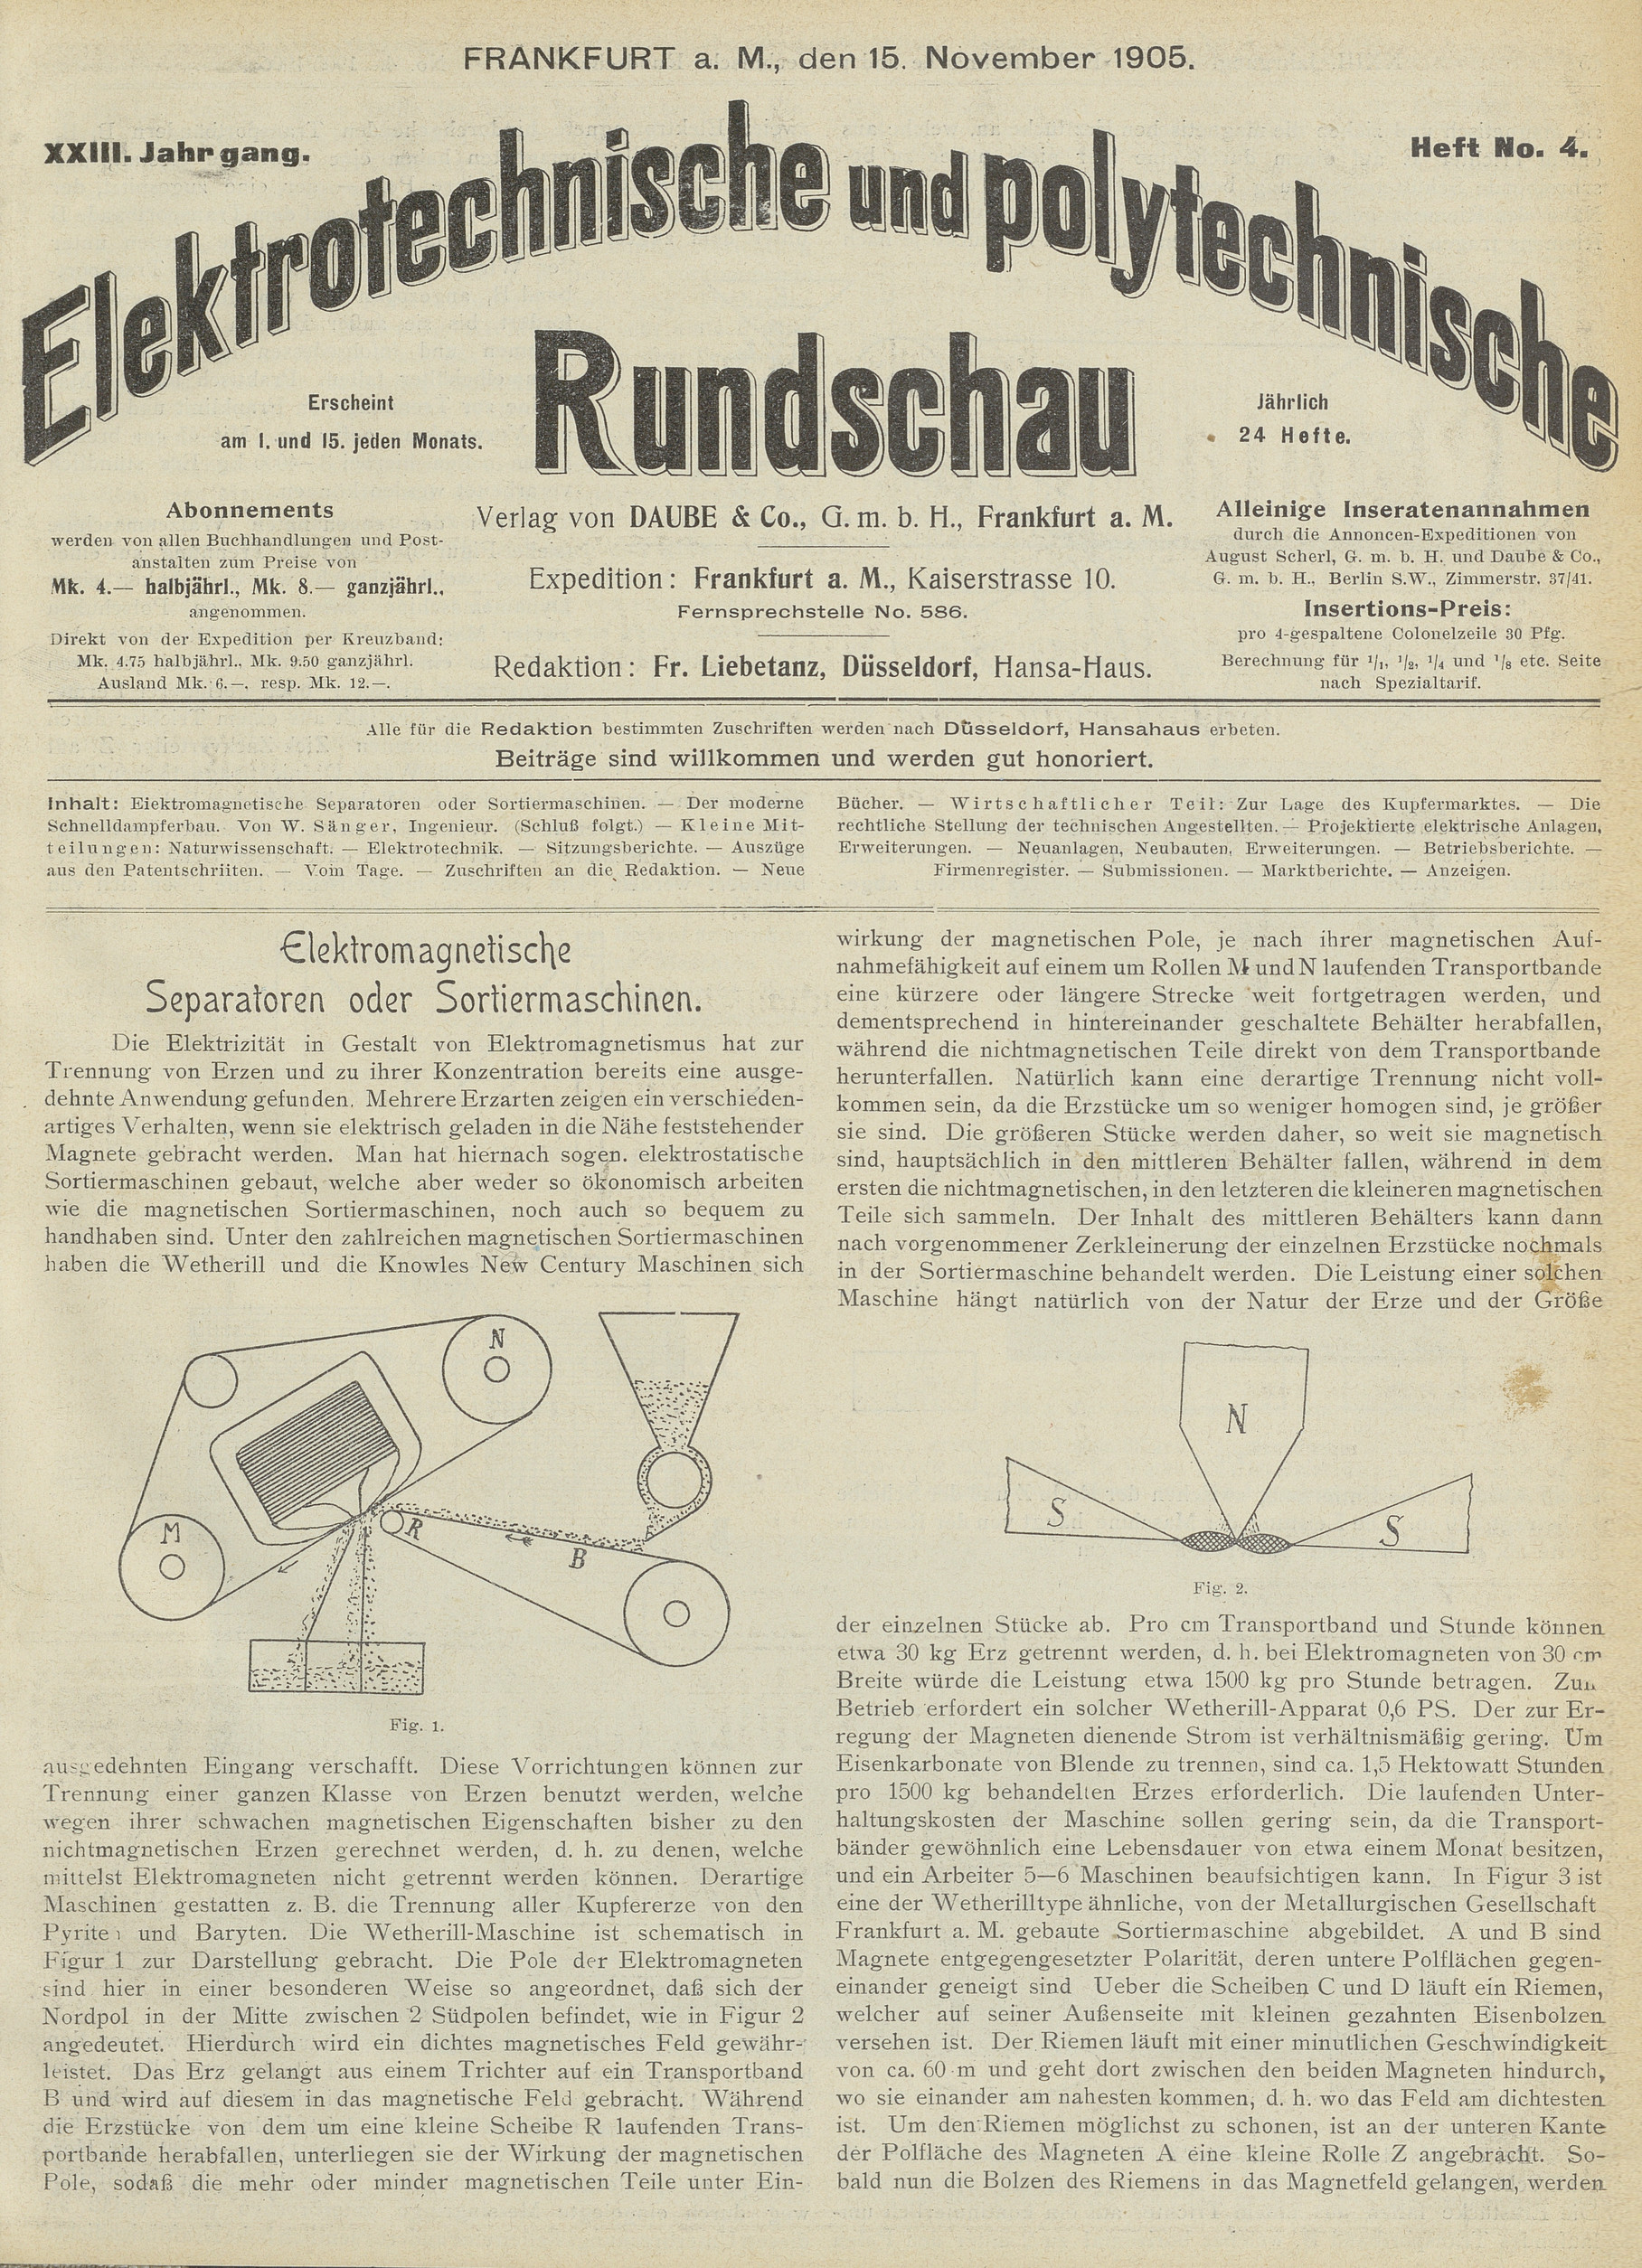 Elektrotechnische und polytechnische Rundschau, XXIII. Jahrgang, Heft No. 4